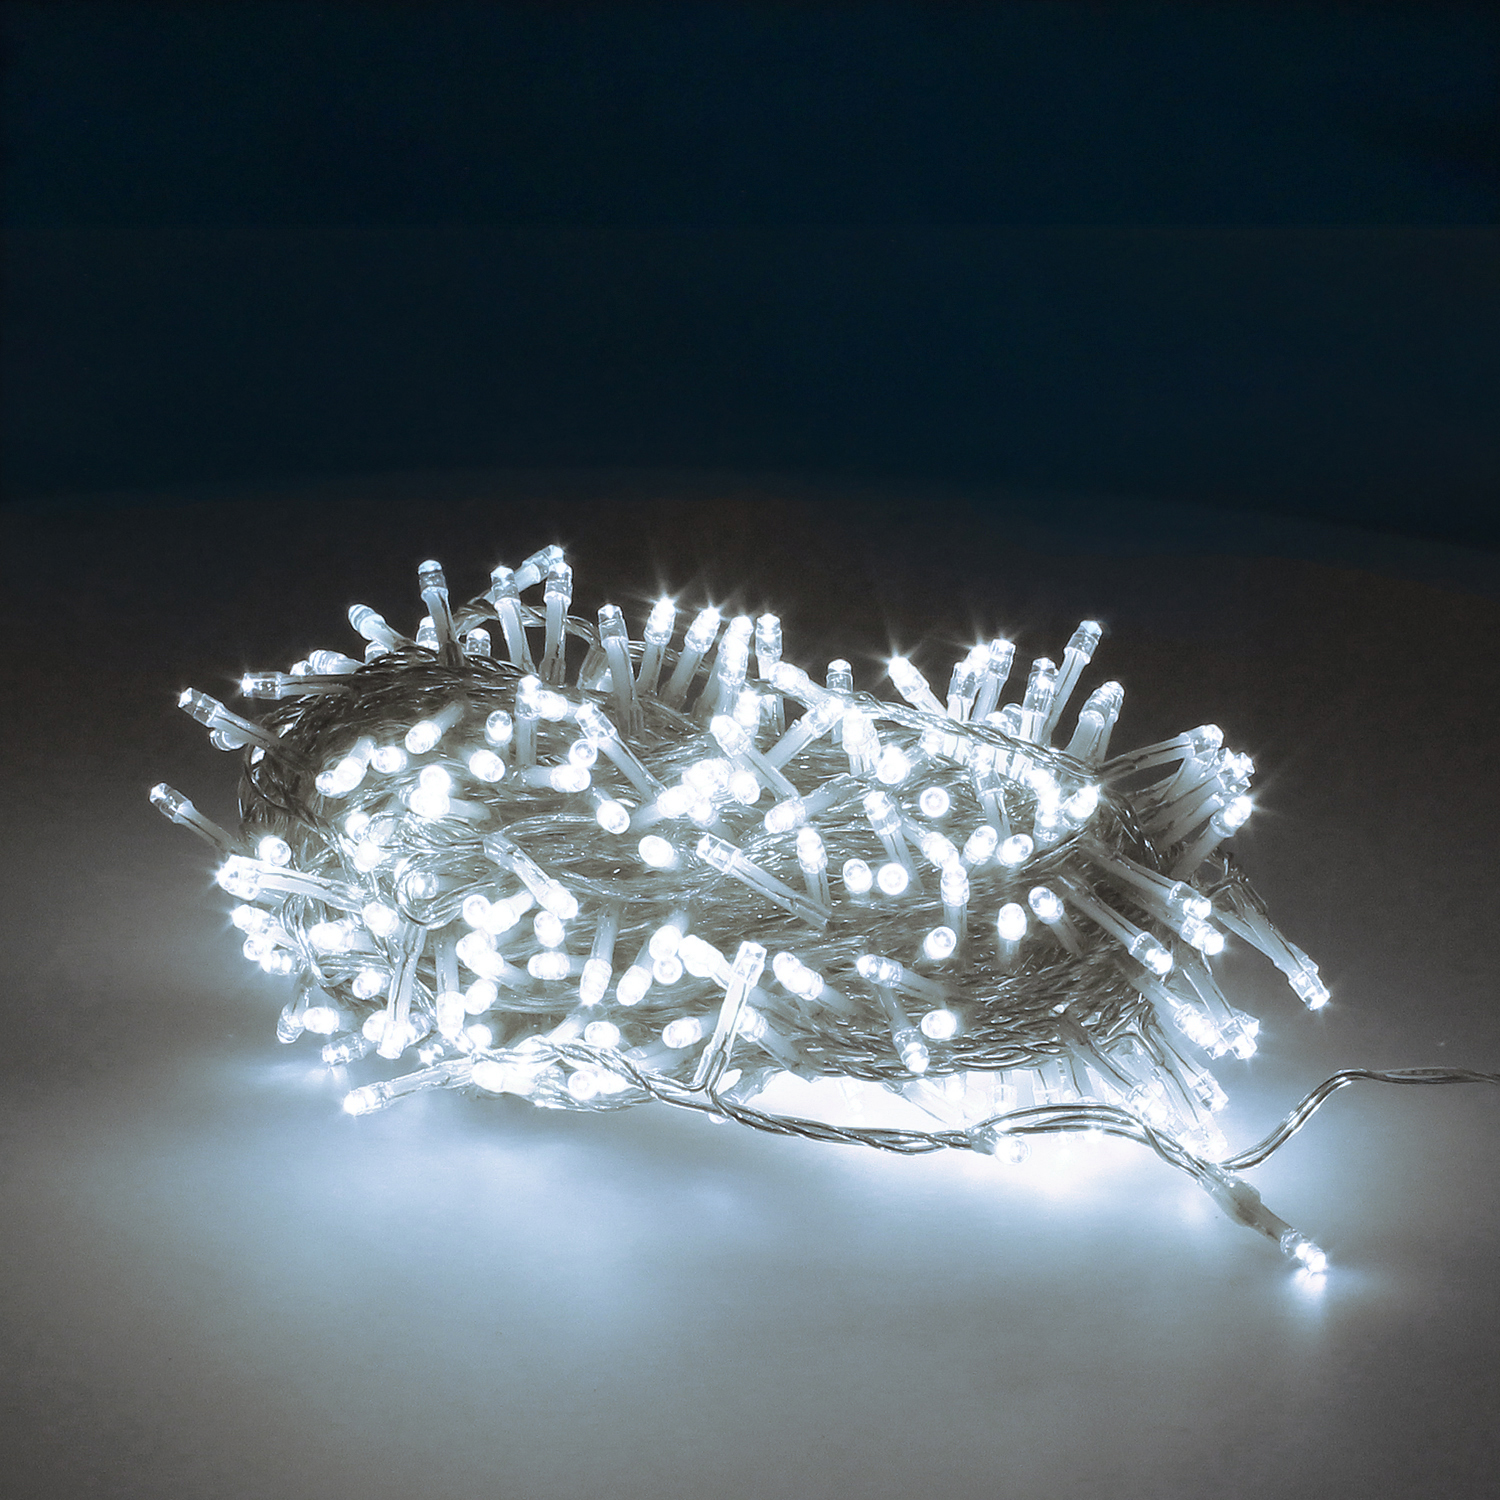 Brilla en Navidad con nuestras Luces LED Blanco Frío: 300 luces, 18m, perfectas para árboles de 150/180 cm. Cable transparente, transformador con 8 funciones. ¡Crea un ambiente festivo único!